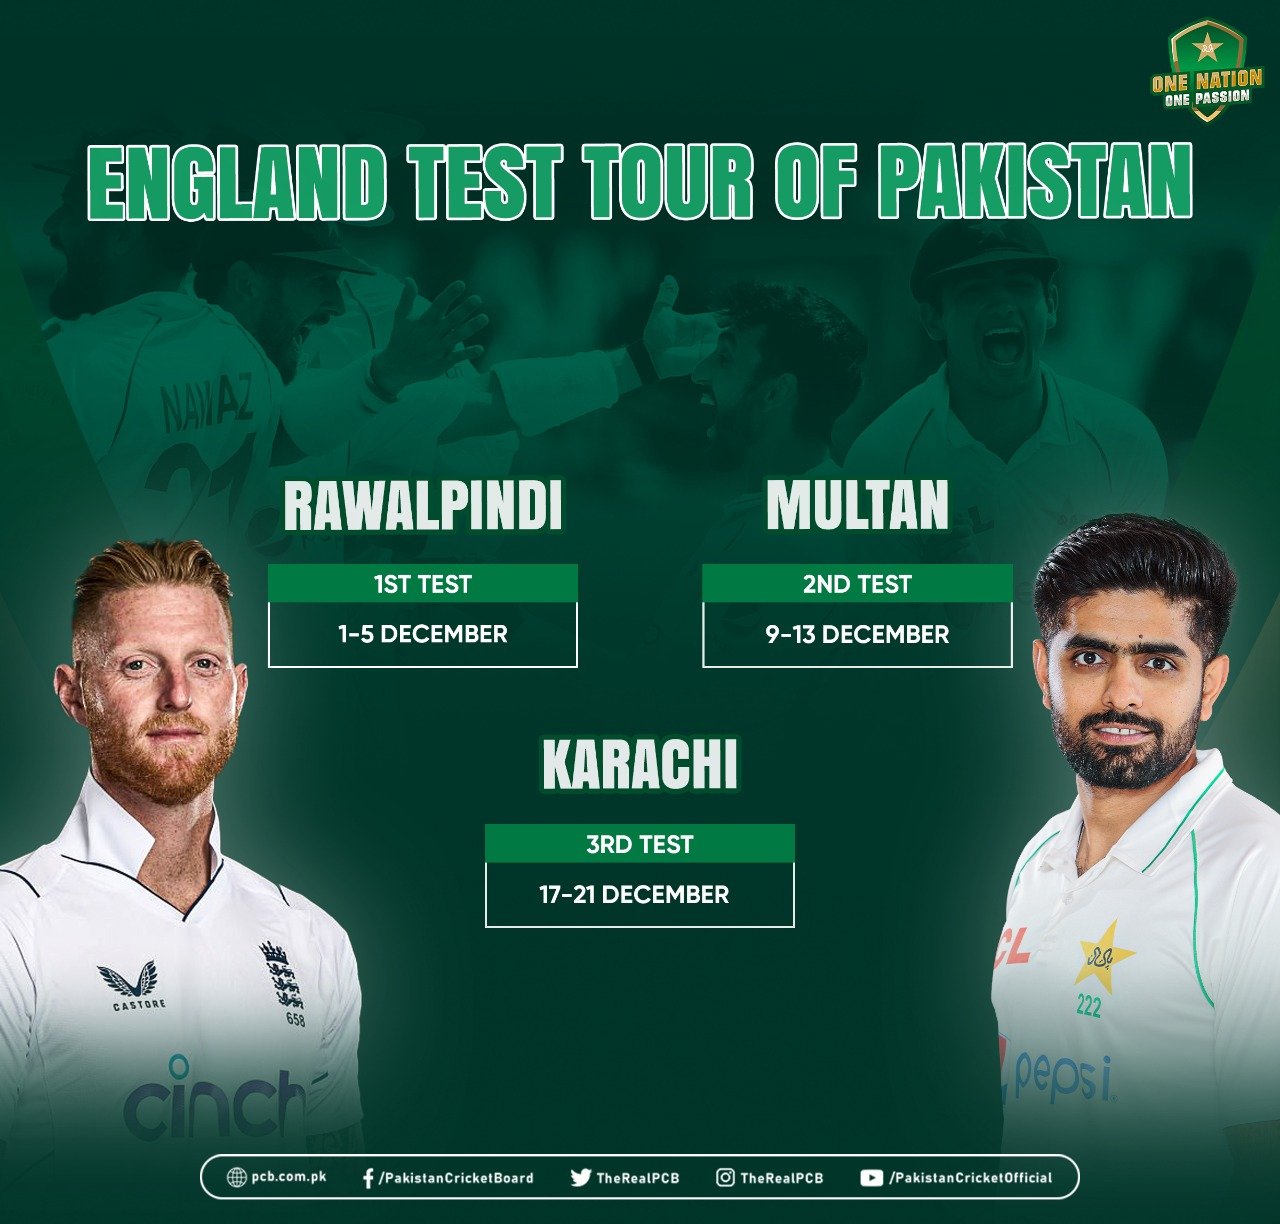 pakistan tour of england 2019 test series